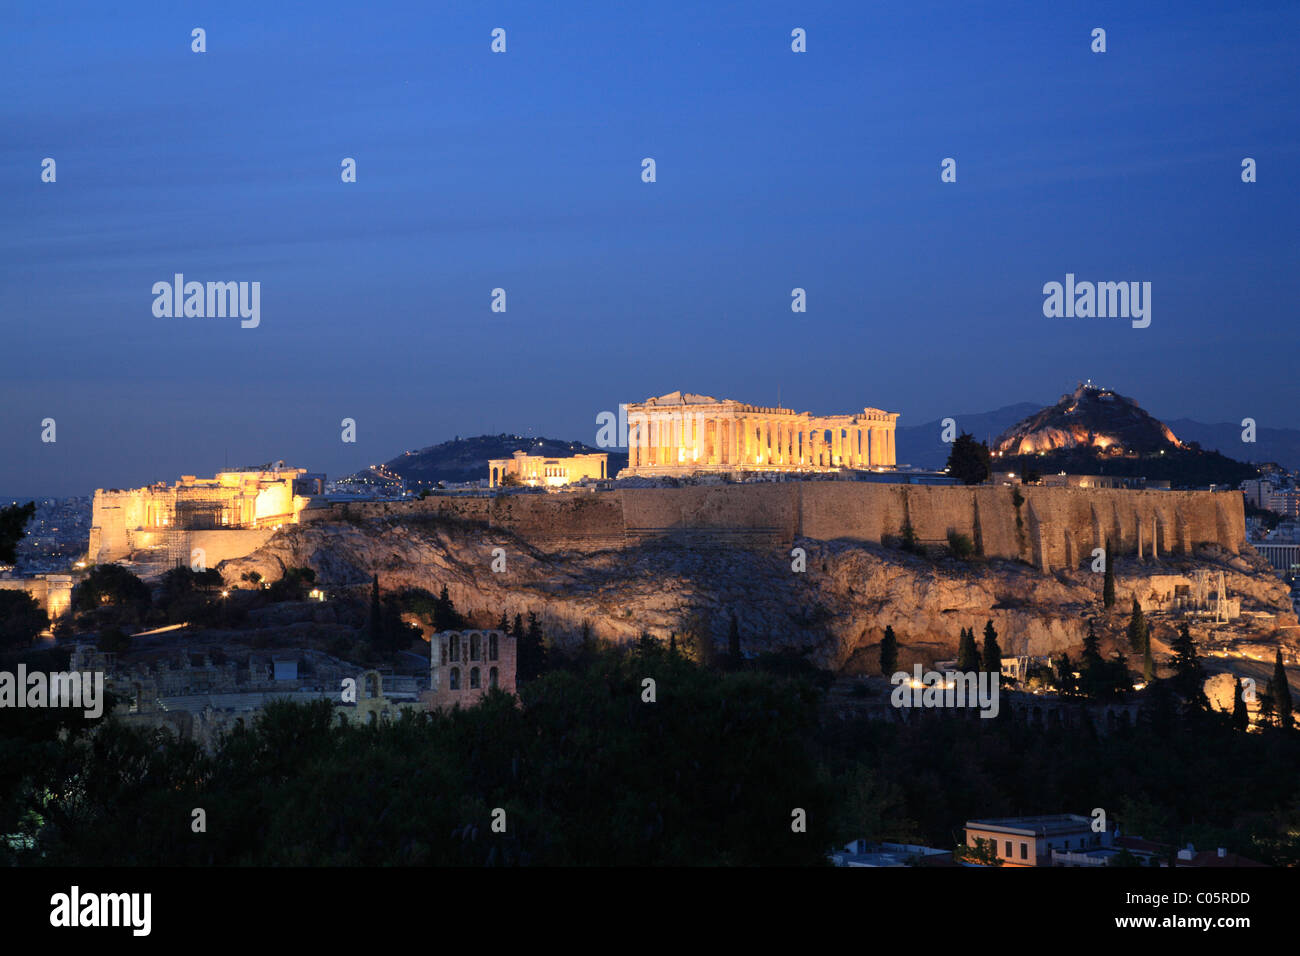 Liew auf die Akropolis, Herodes Atticus Theater und Parthenon von Filopappos Hill, Athen, Griechenland, Lykavittas Hügel im Hintergrund Stockfoto